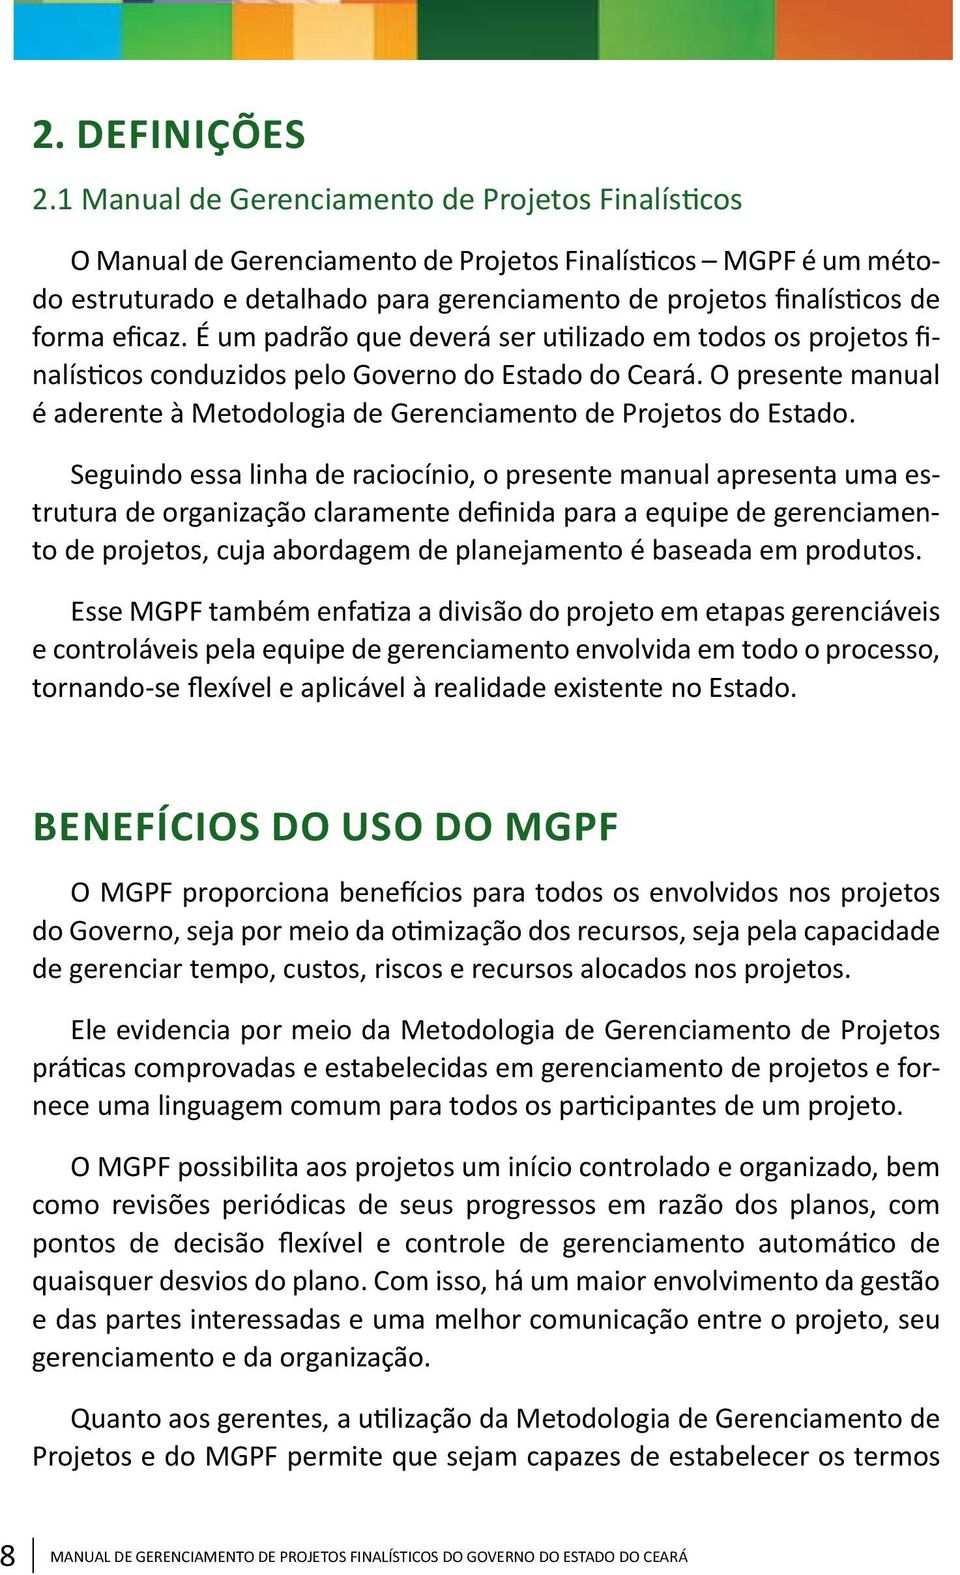 eficaz. É um padrão que deverá ser utilizado em todos os projetos finalísticos conduzidos pelo Governo do Estado do Ceará.